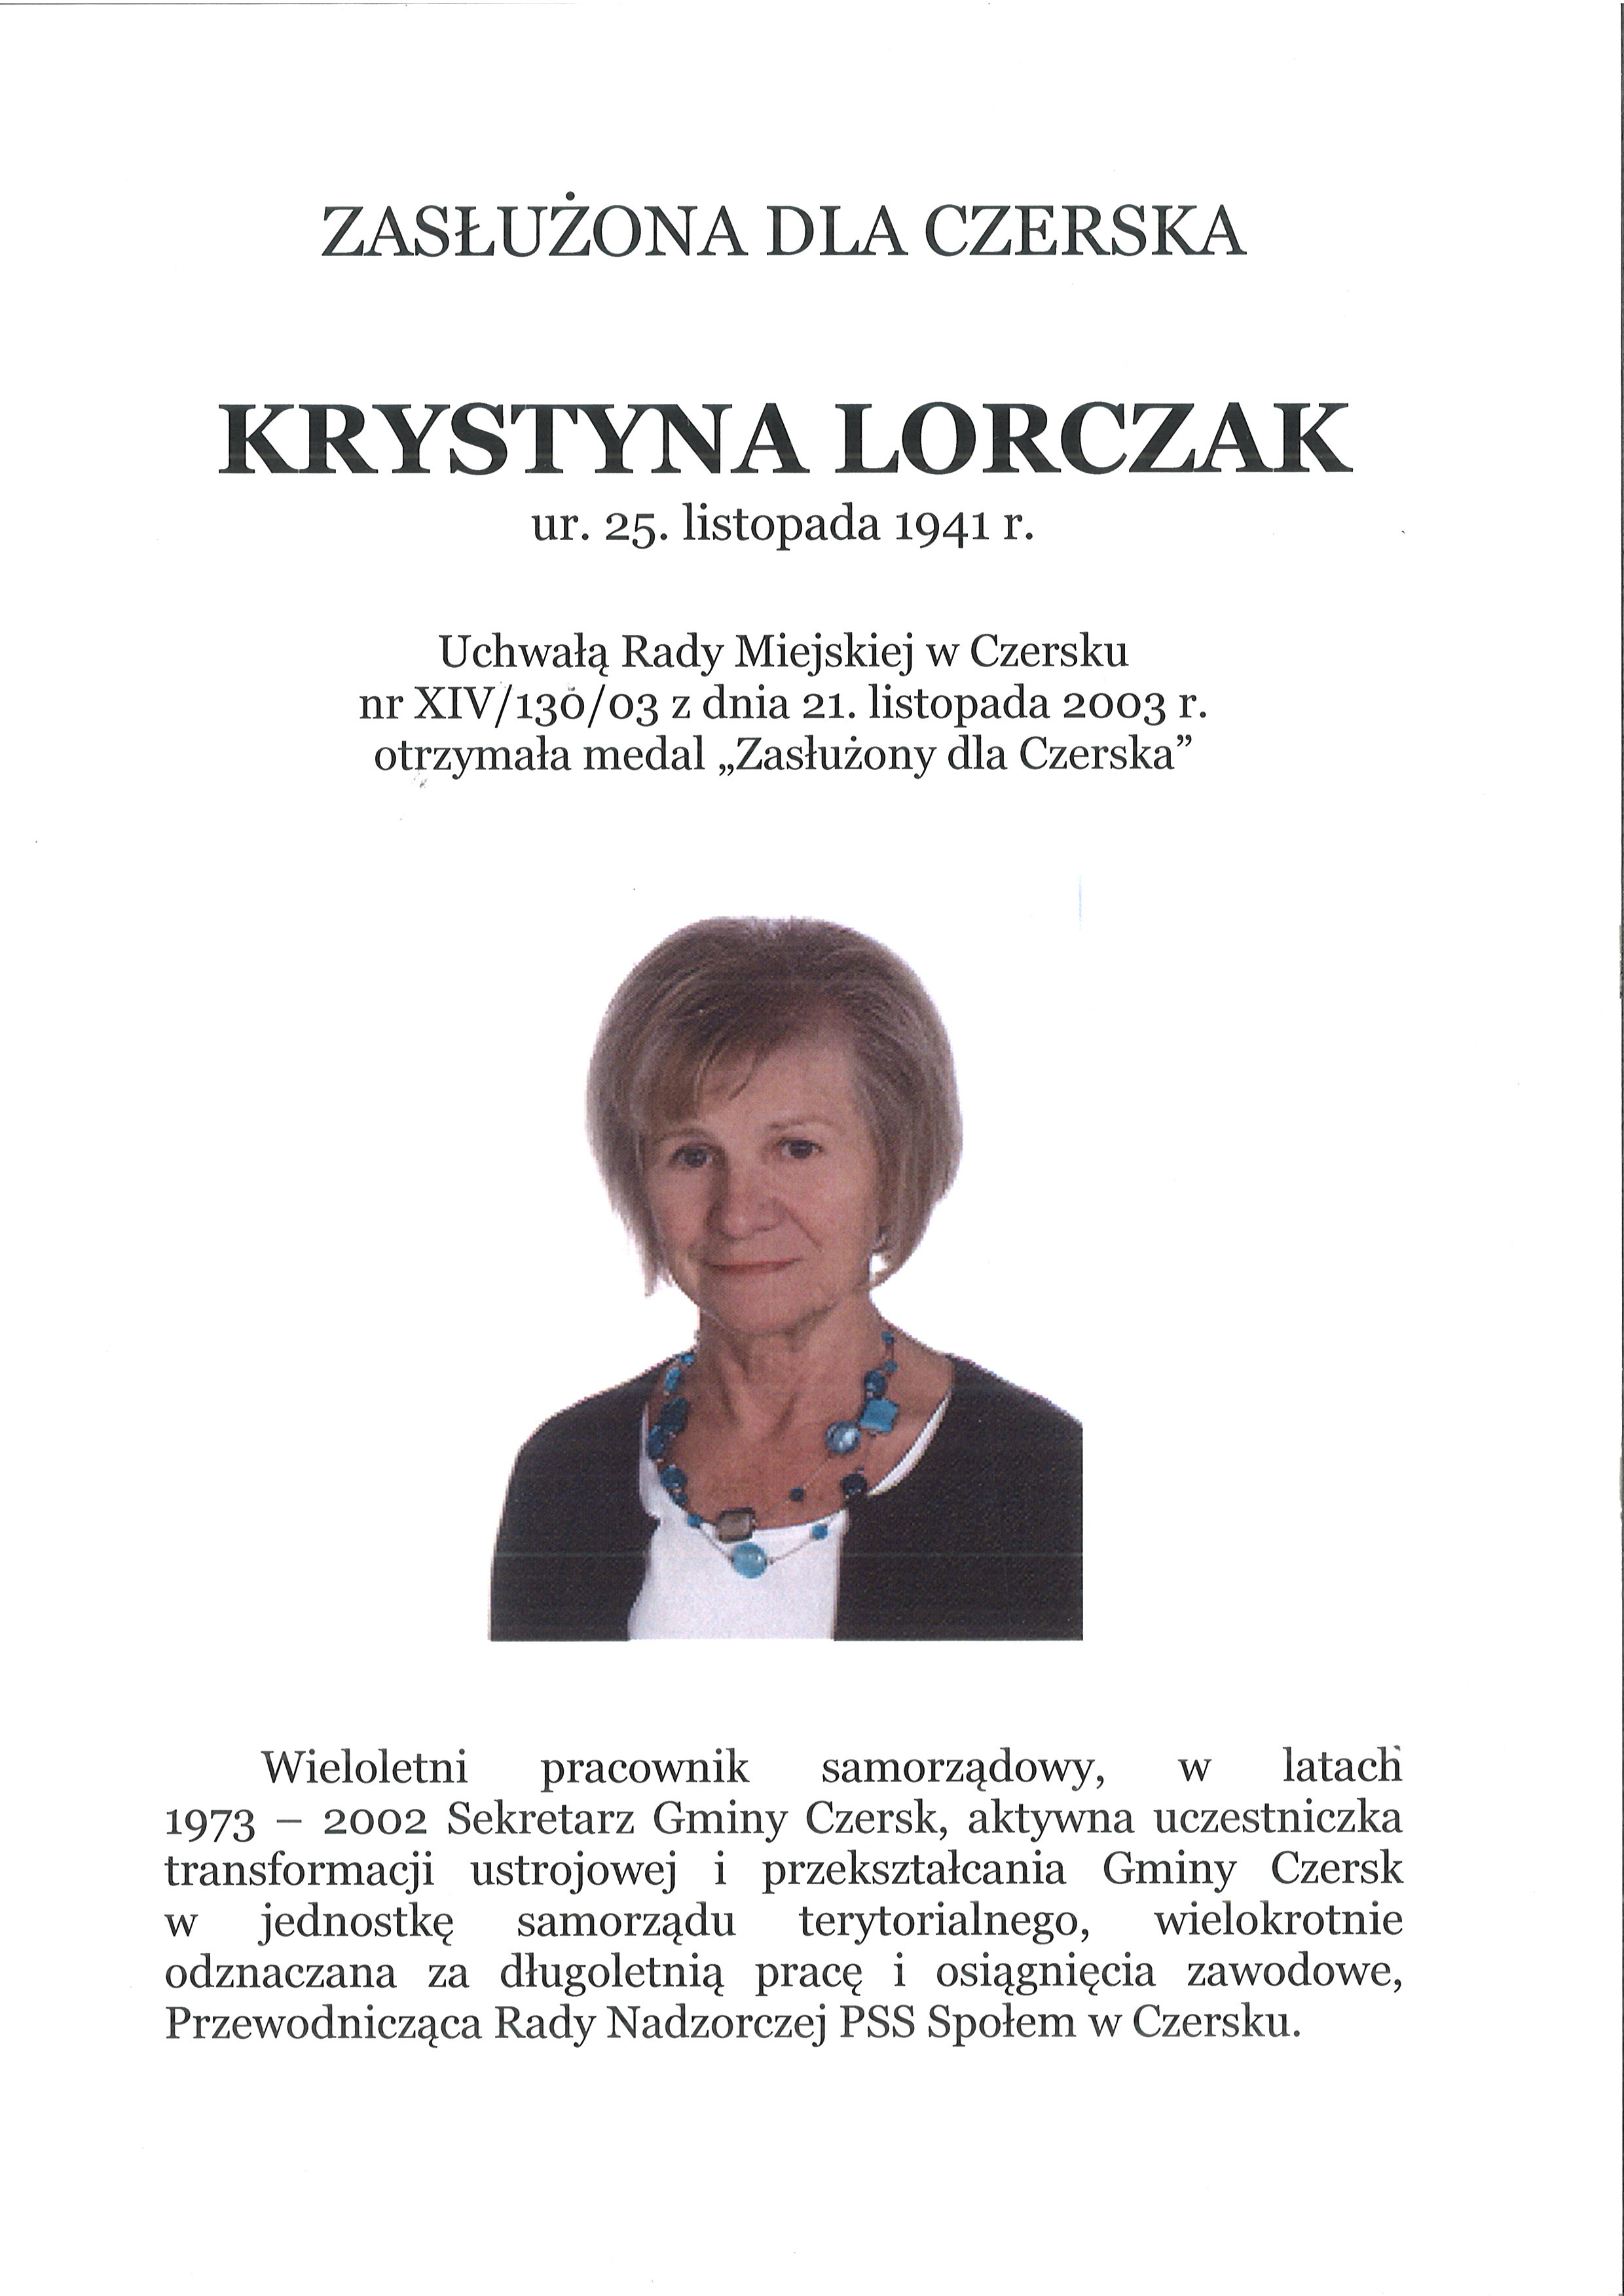 Krystyna Lorczak